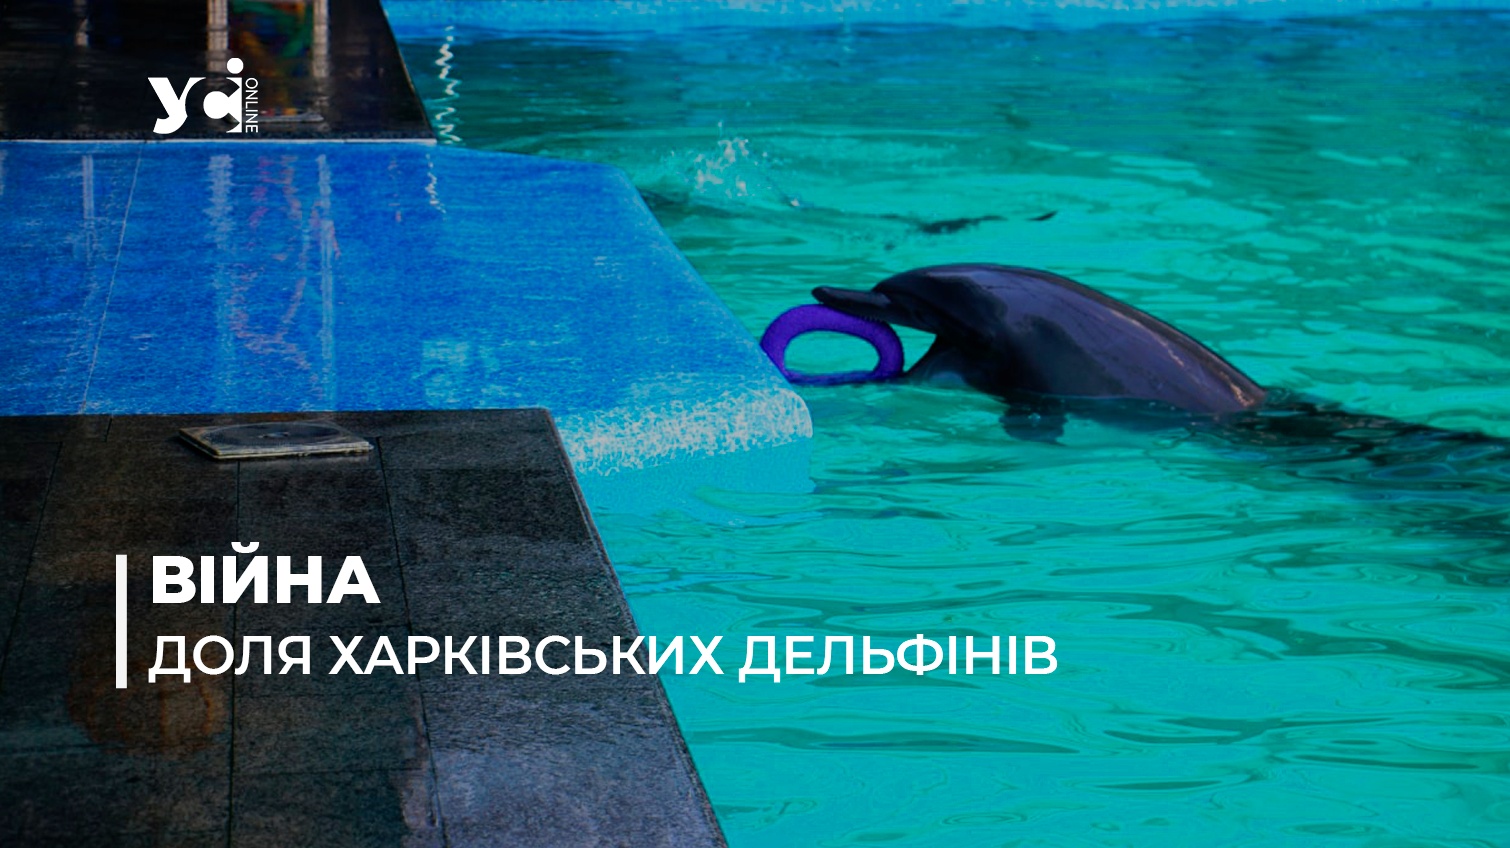 Одеський дельфінарій шукає новий дім для ссавців із Харкова (фото) «фото»